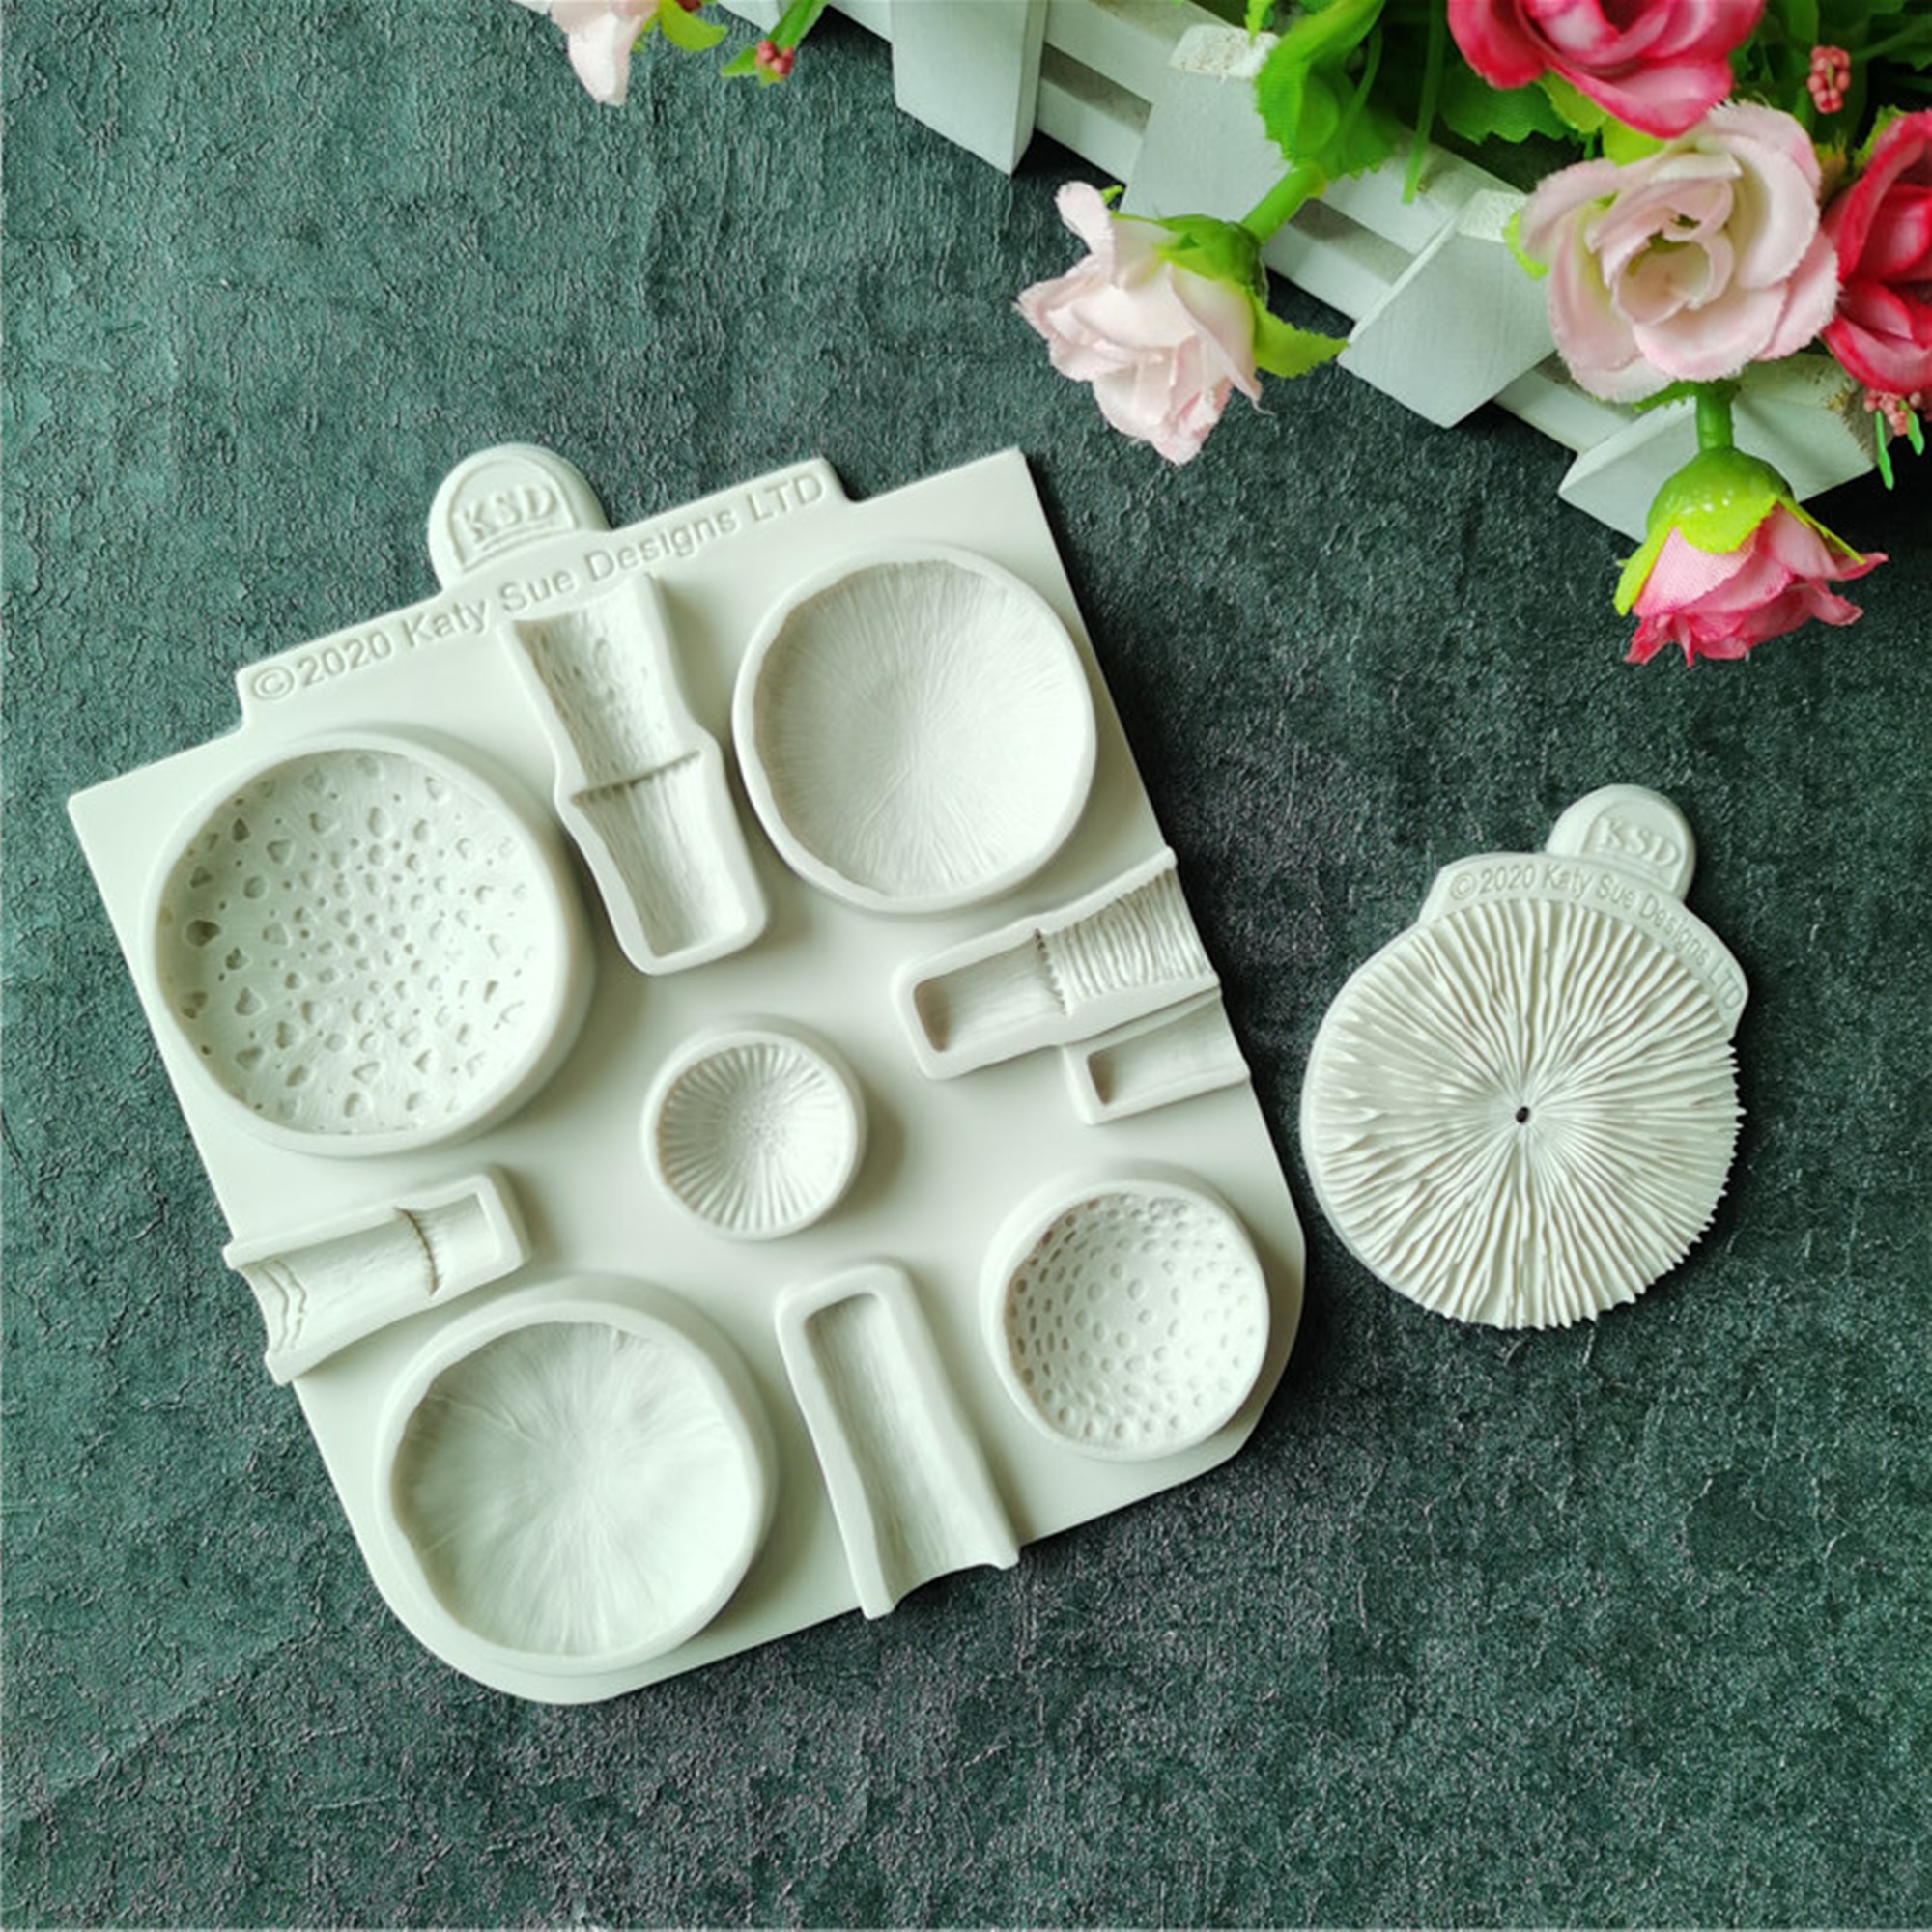 mushroom-silicone-fondant-molds-wedding-cake-decorating